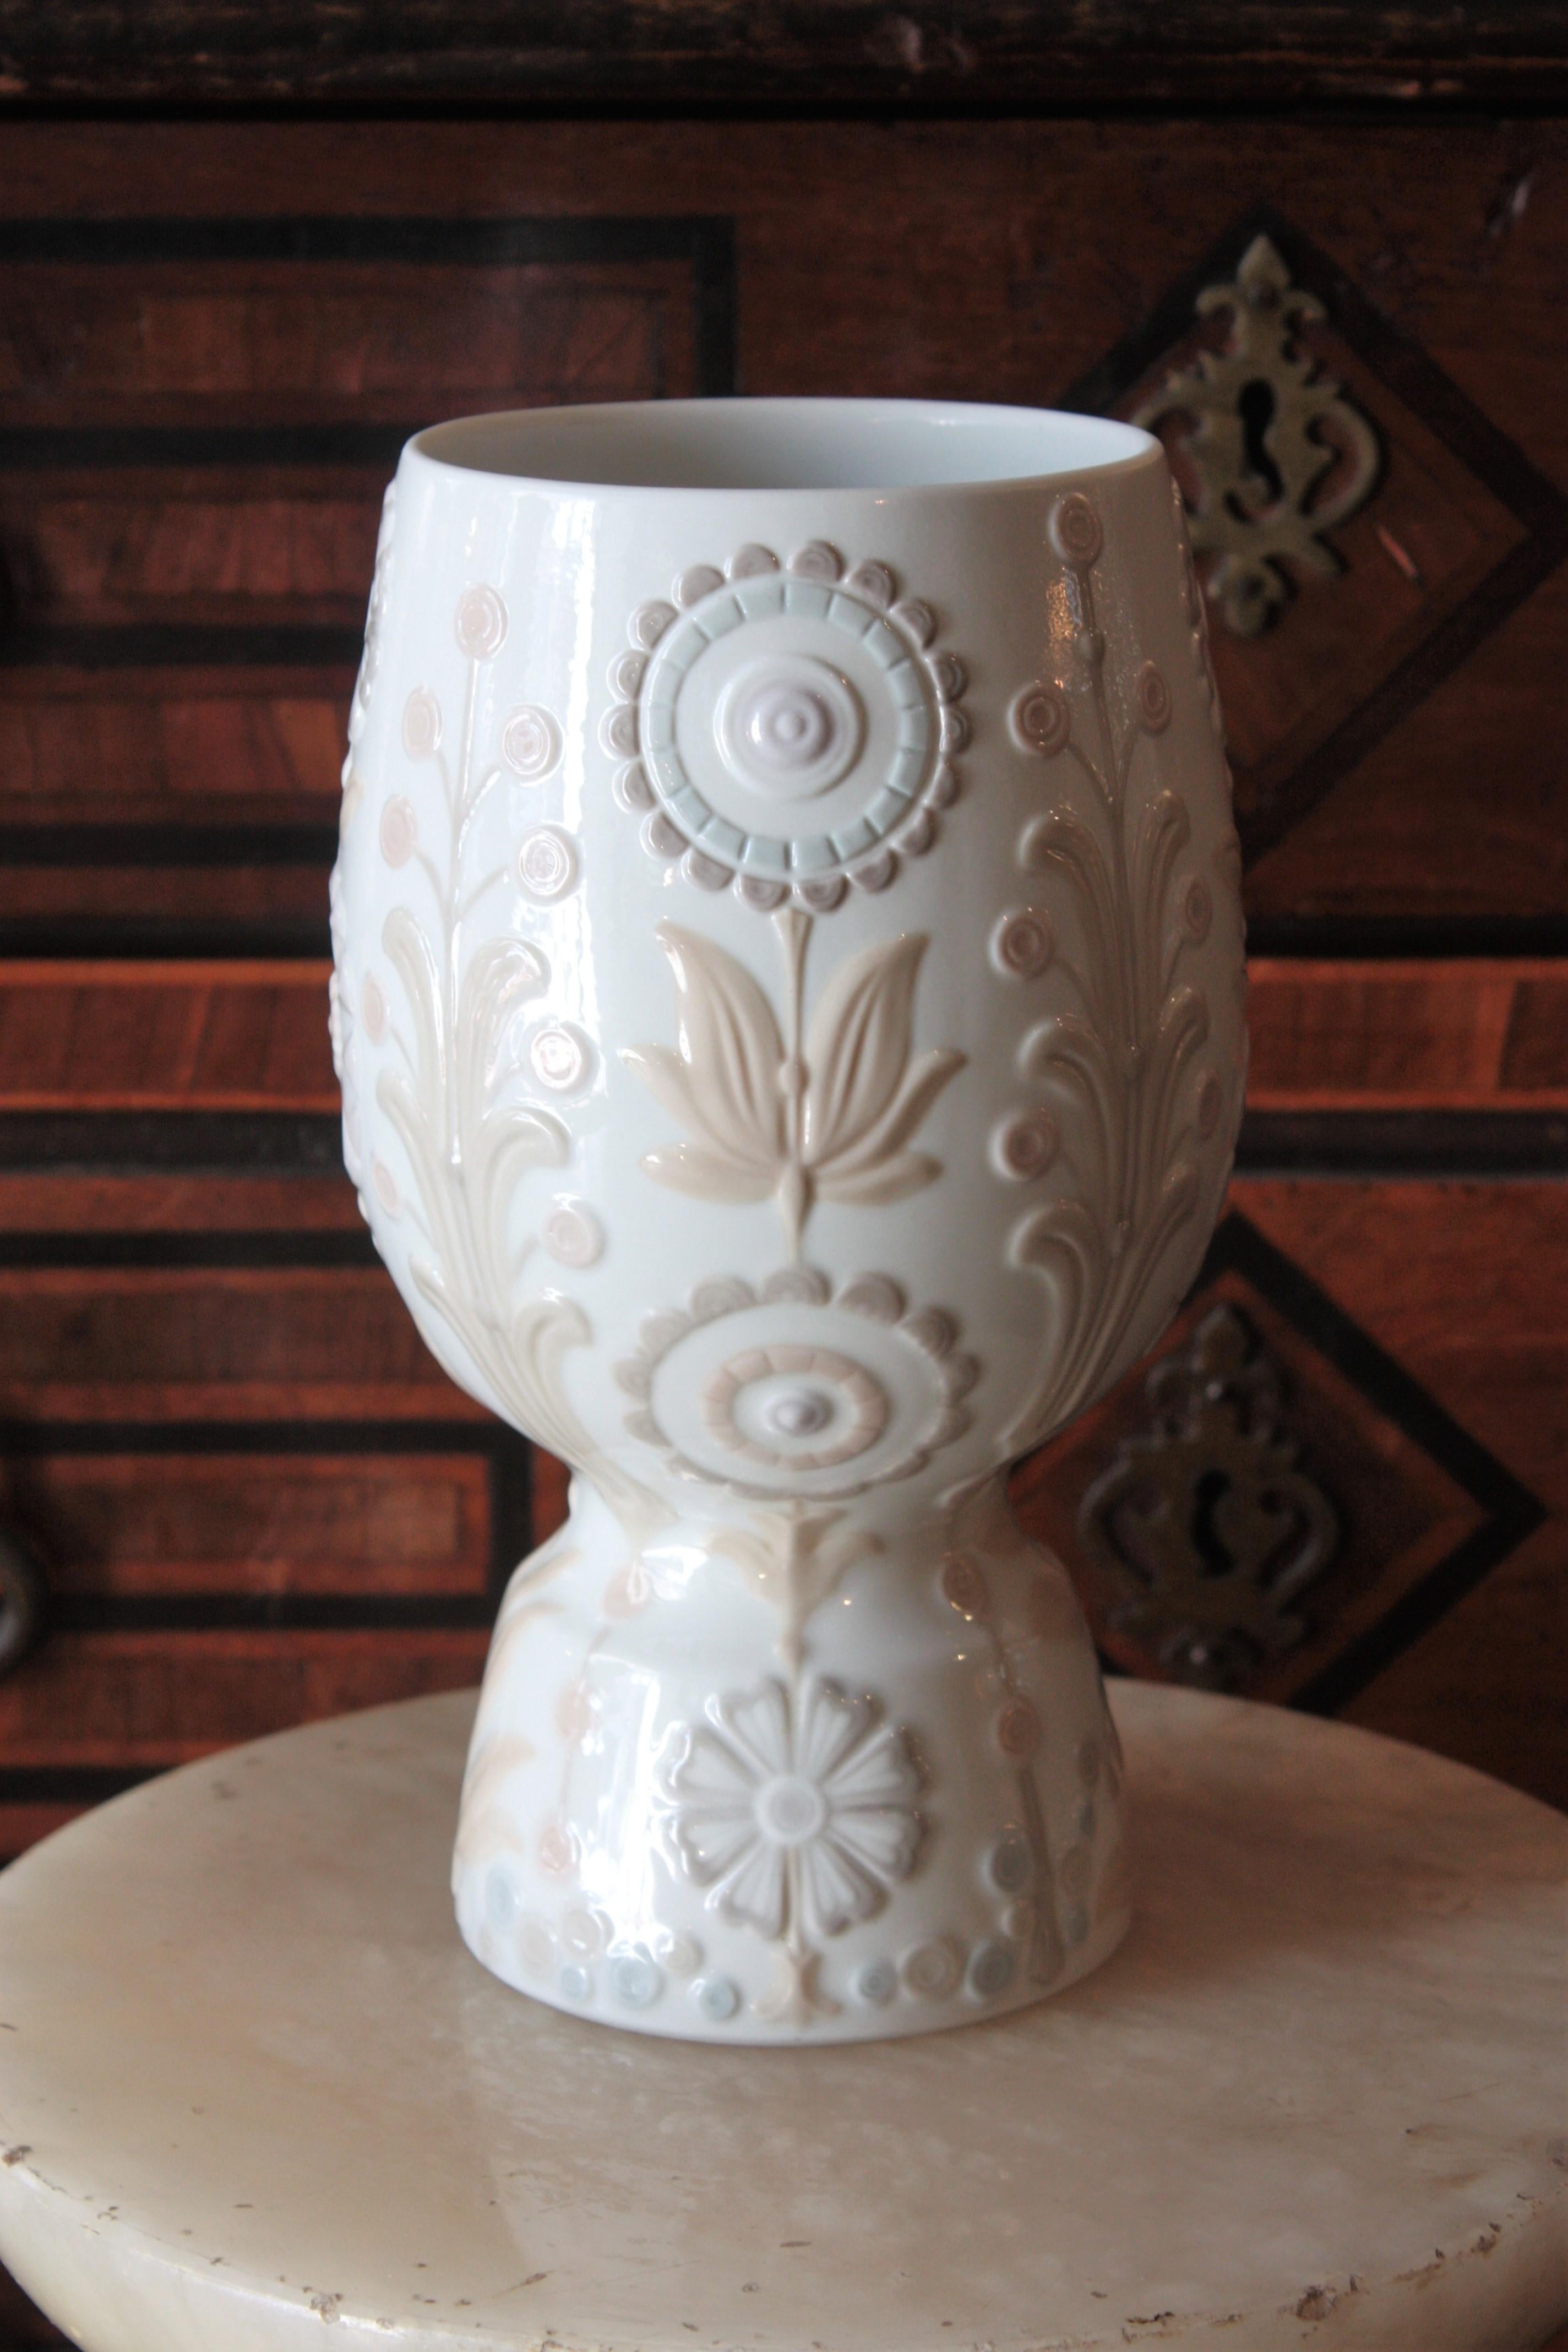 Eine schöne Blumenvase aus Porzellan, entworfen von Julio Fernández und hergestellt von Lladró. Spanien, 1970er Jahre.
Diese elegante glasierte Porzellanvase hat ein klares Design mit Blumen- und Laubdekor in Pastellfarben.
Neuwertiger Zustand.
Sie